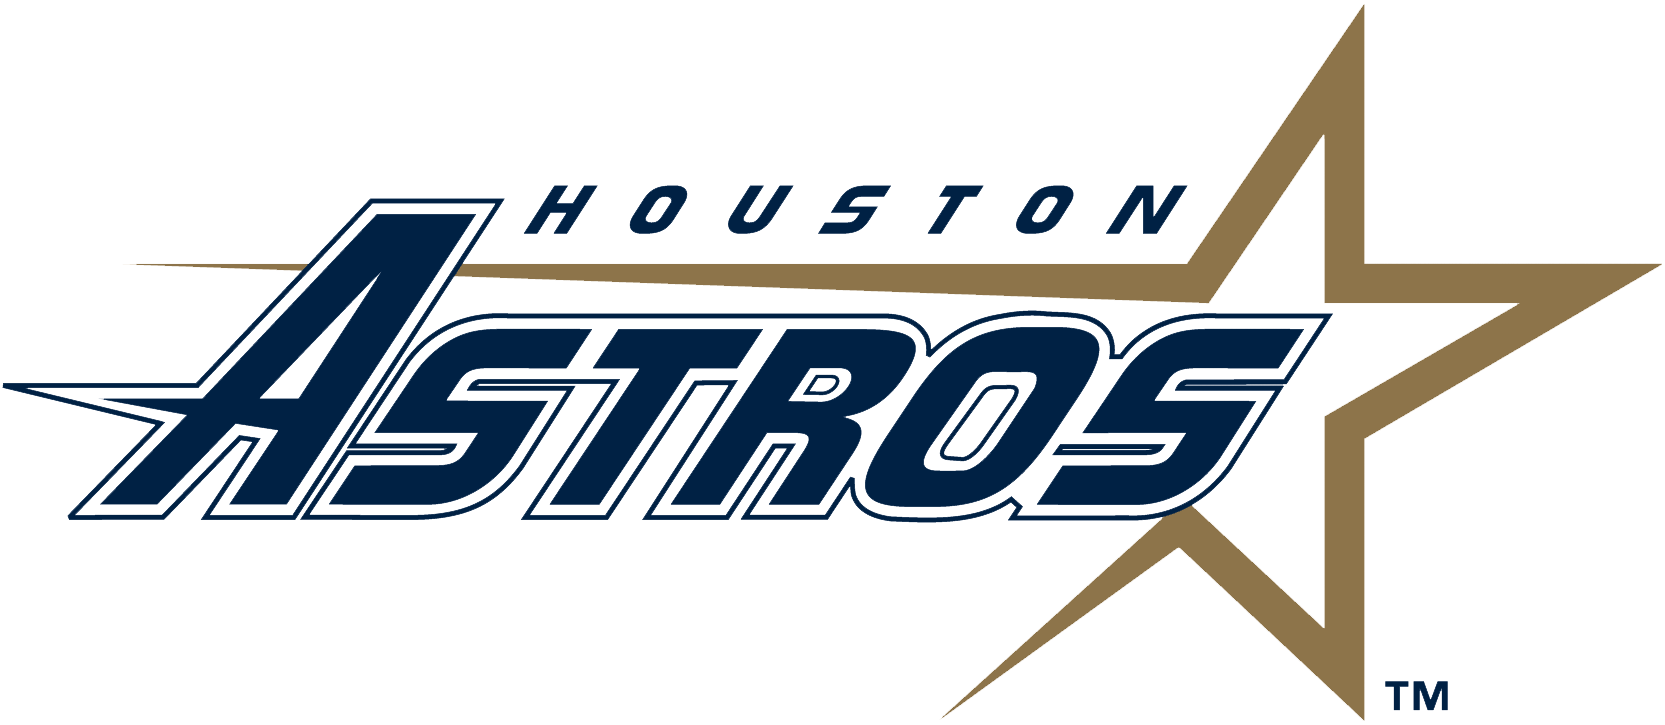 Astros Logo PNG Vectors Free Download